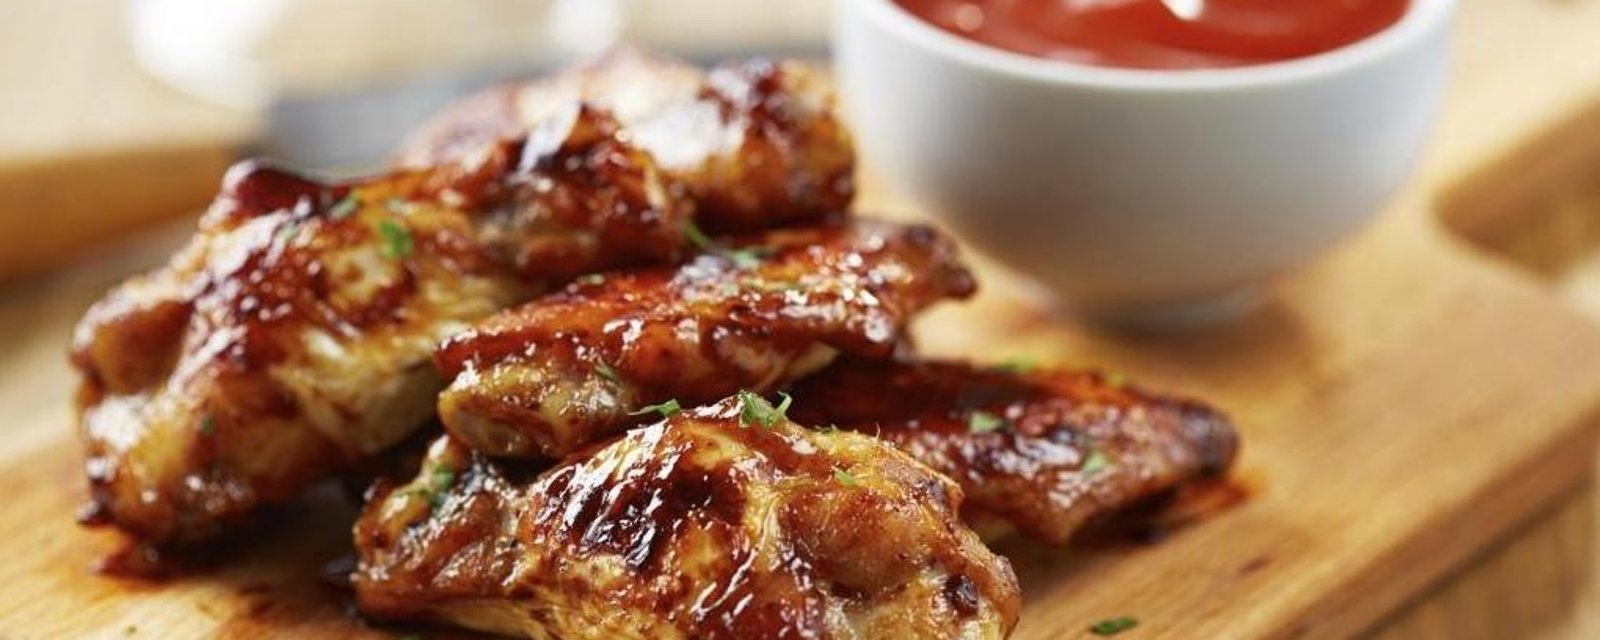 Les 8 meilleures recettes d'ailes de poulet pour votre soirée Super Bowl